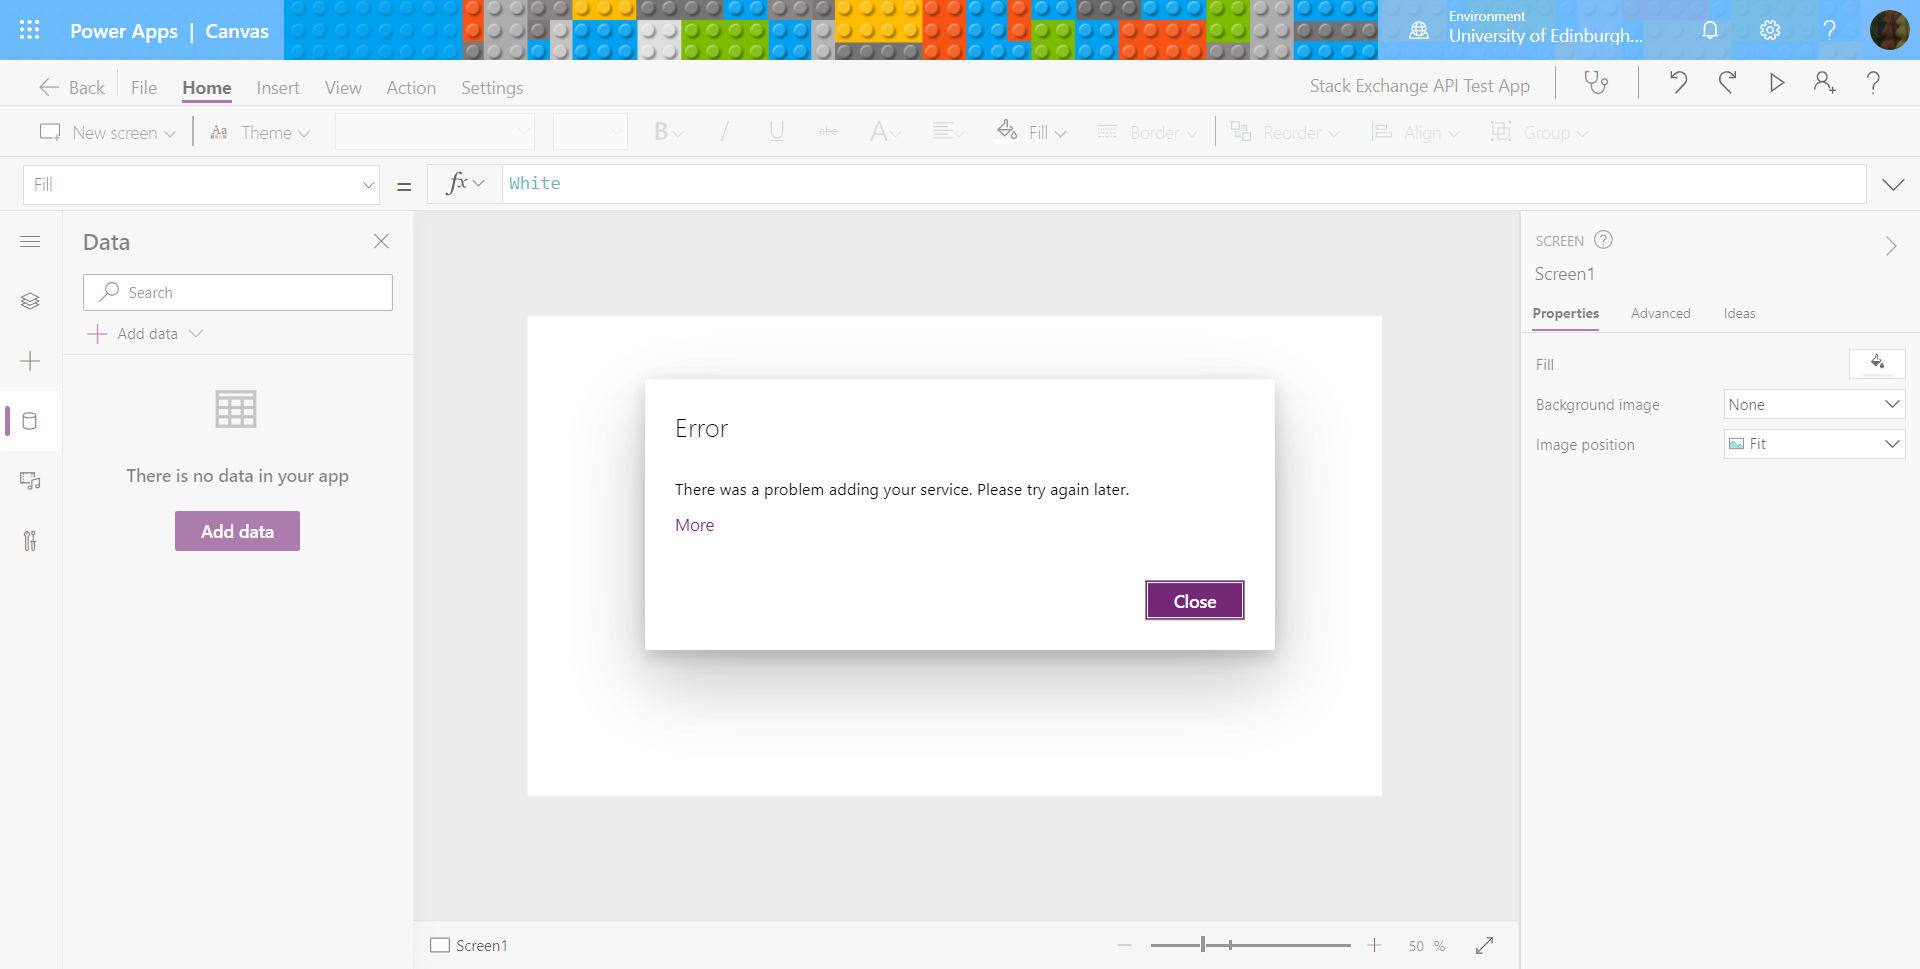 Screenshot showing an error message